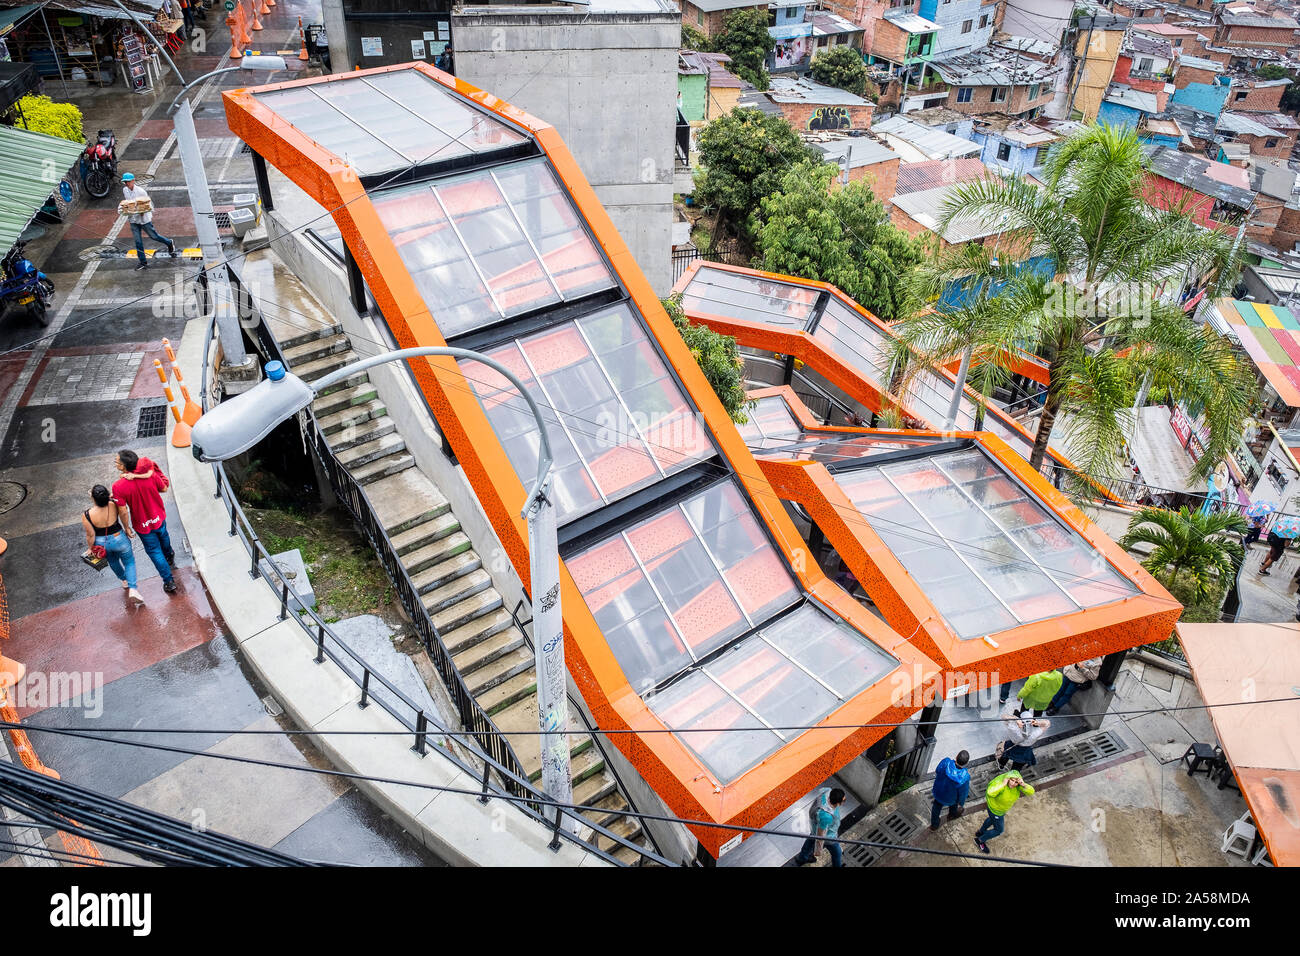 Les escaliers roulants, Comuna 13, Medellín, Colombie Banque D'Images